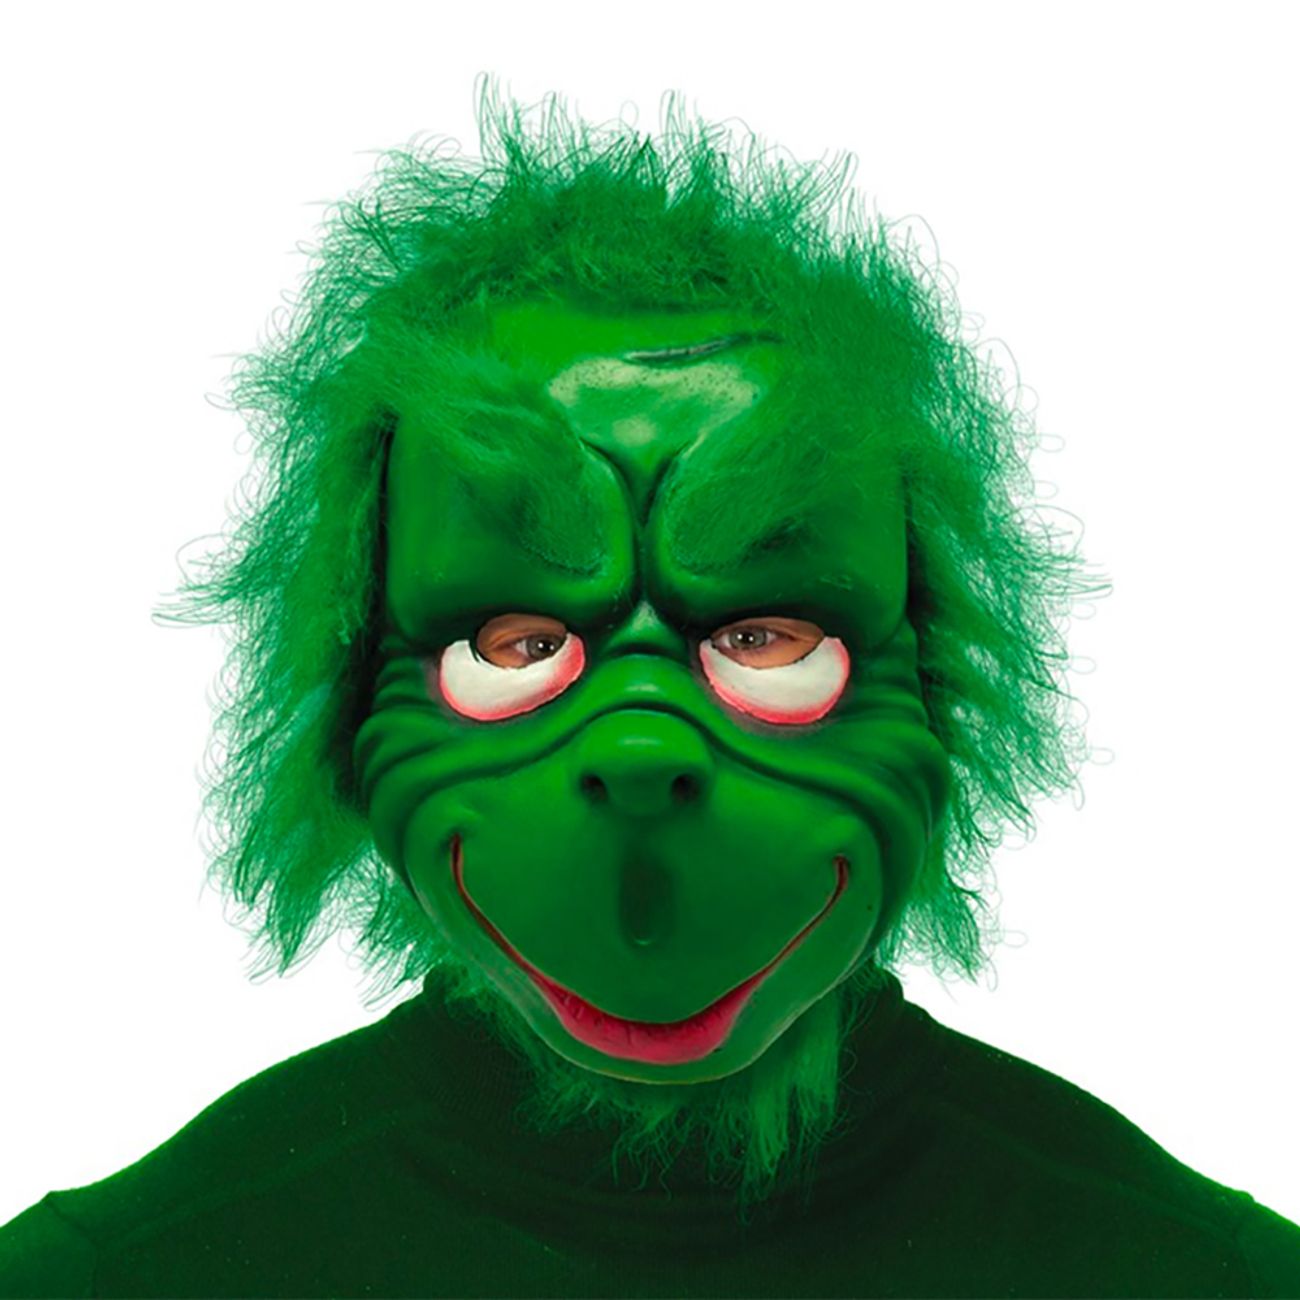 gron-gompy-goblin-mask-78682-1